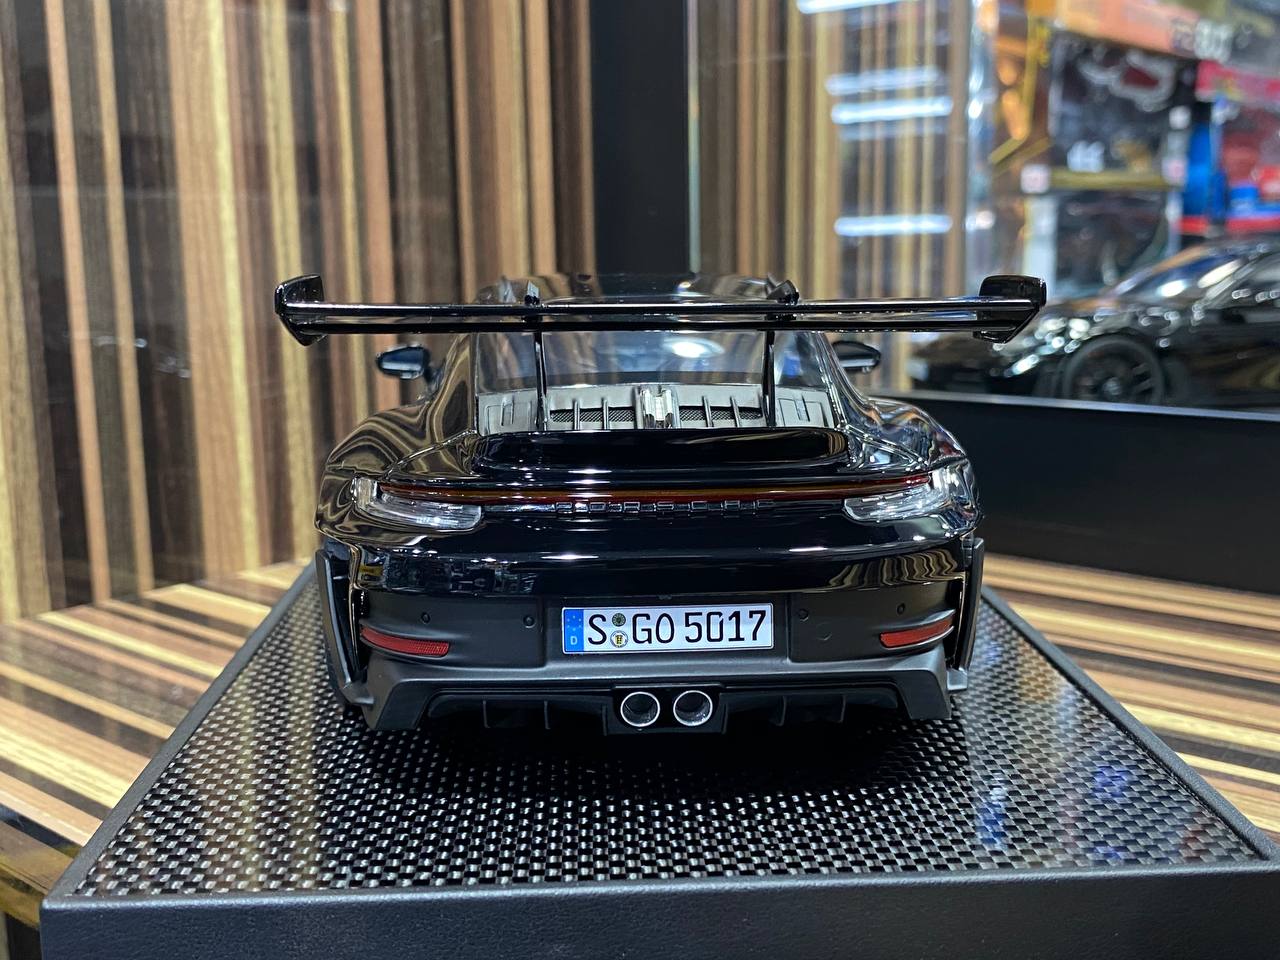 Porsche 911 Miniature GT3 RS